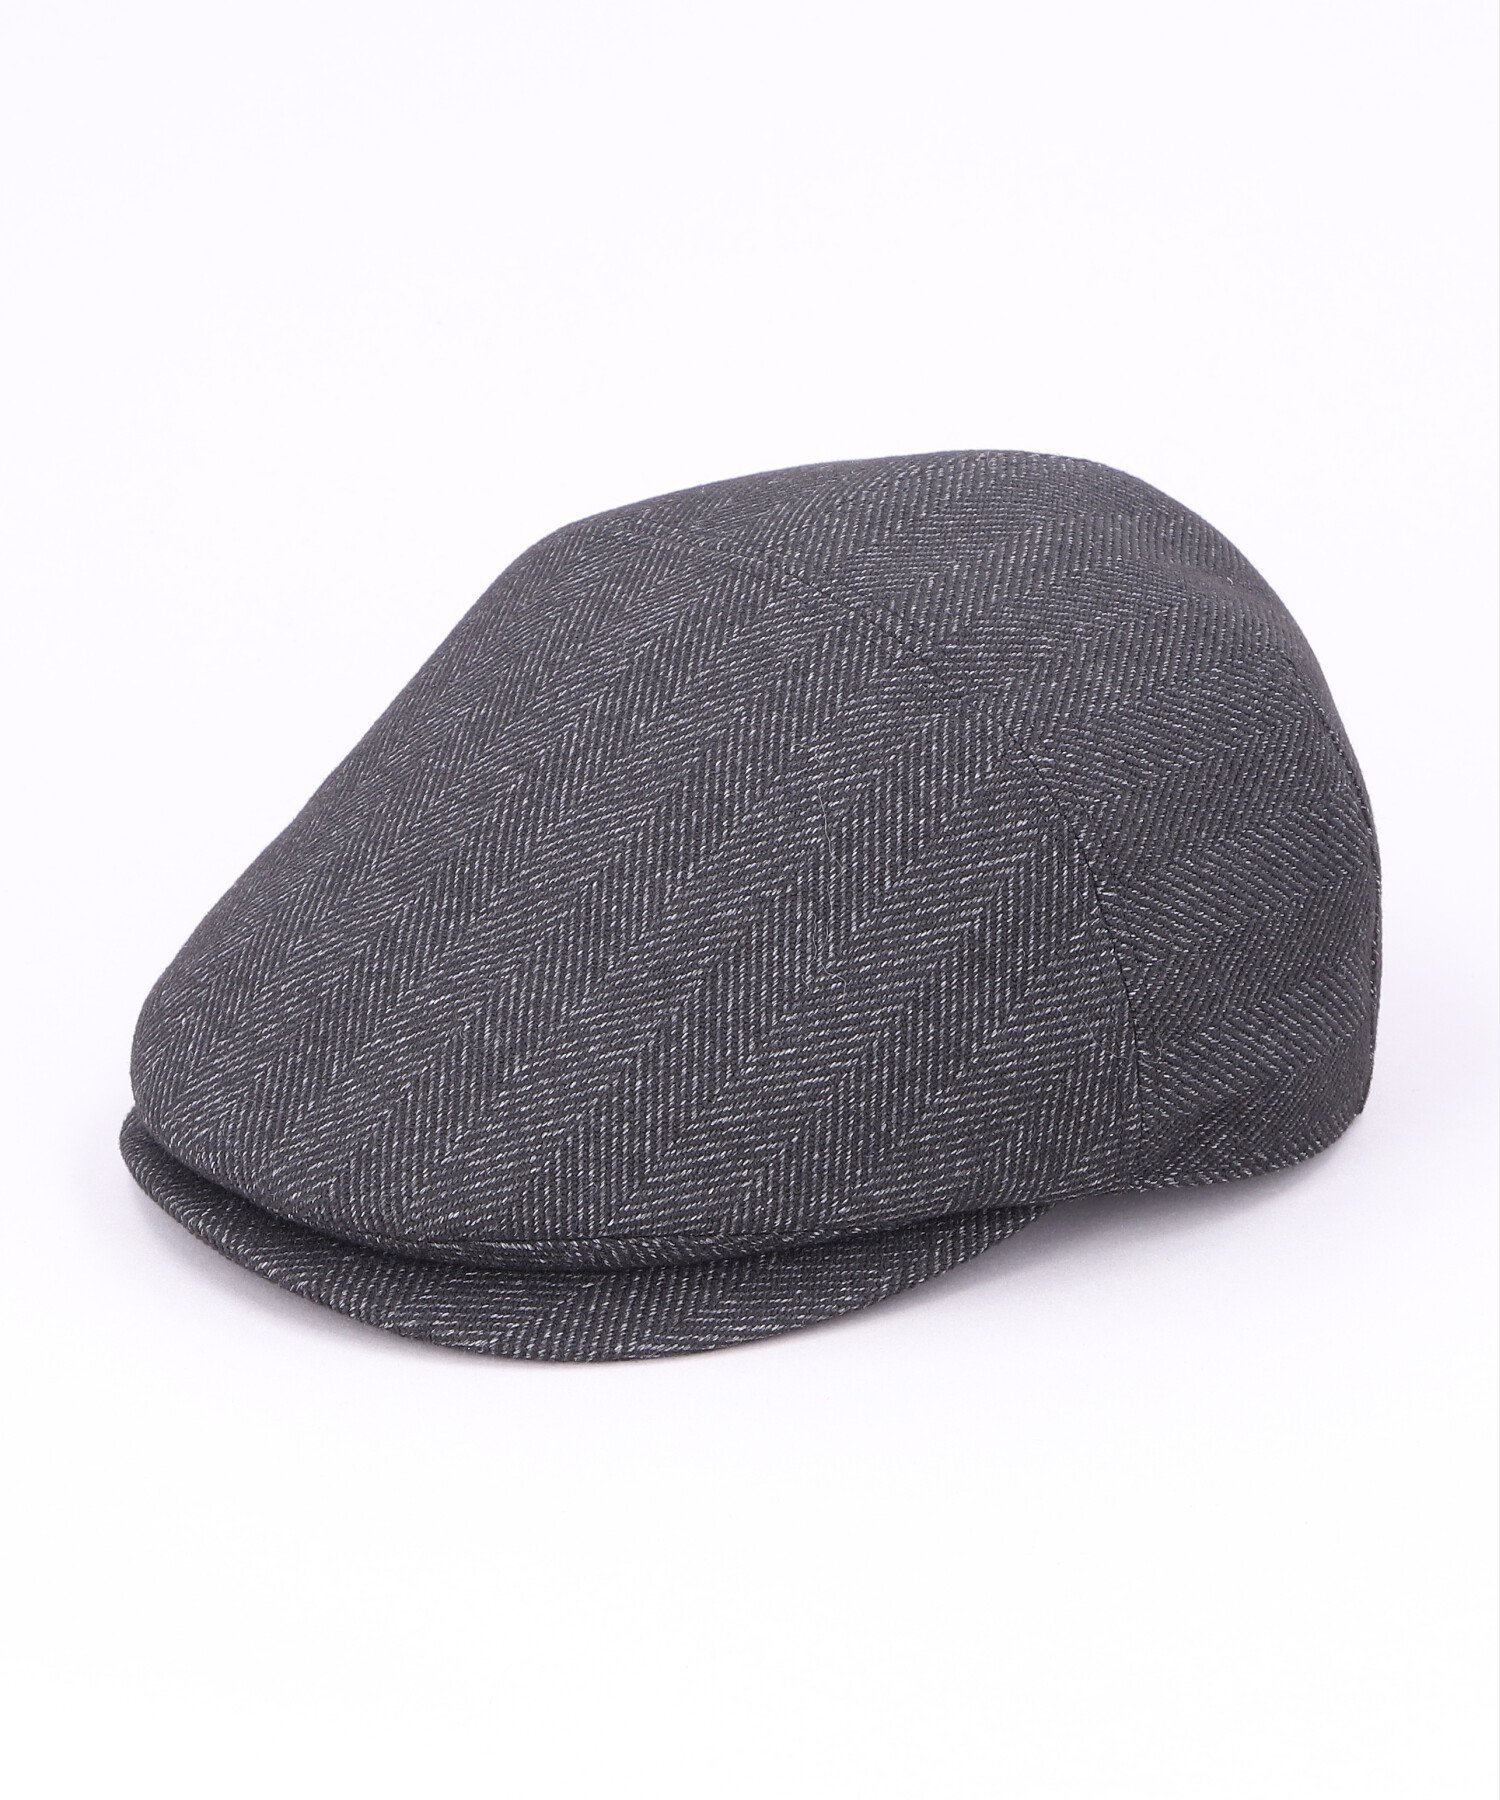 カシラ 帽子 メンズ CA4LA WASHABLE NANTING 16 カシラ 帽子 ハンチング・ベレー帽 ブラック グレー ブラウン【送料無料】